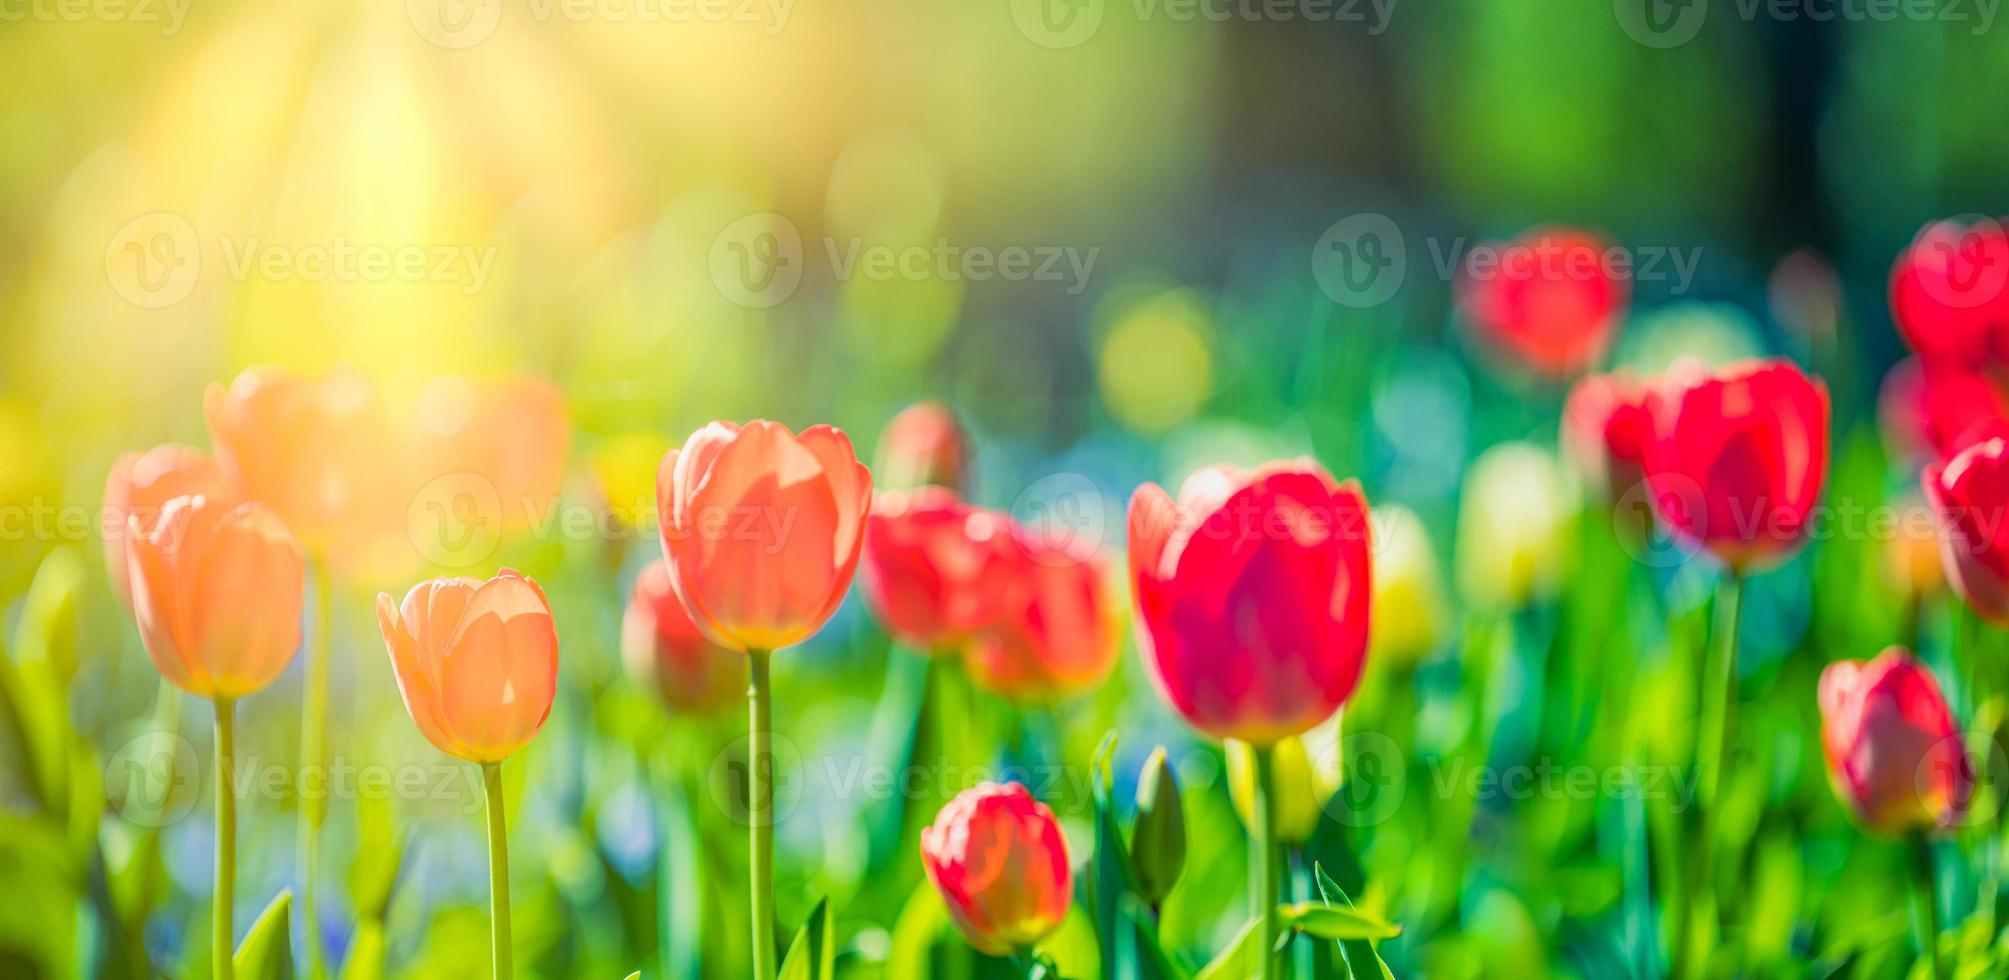 mooi boeket panorama van rood wit en roze tulpen in voorjaar natuur voor kaart ontwerp en web spandoek. sereen detailopname, idyllisch romantisch liefde bloemen natuur landschap. abstract wazig weelderig gebladerte foto